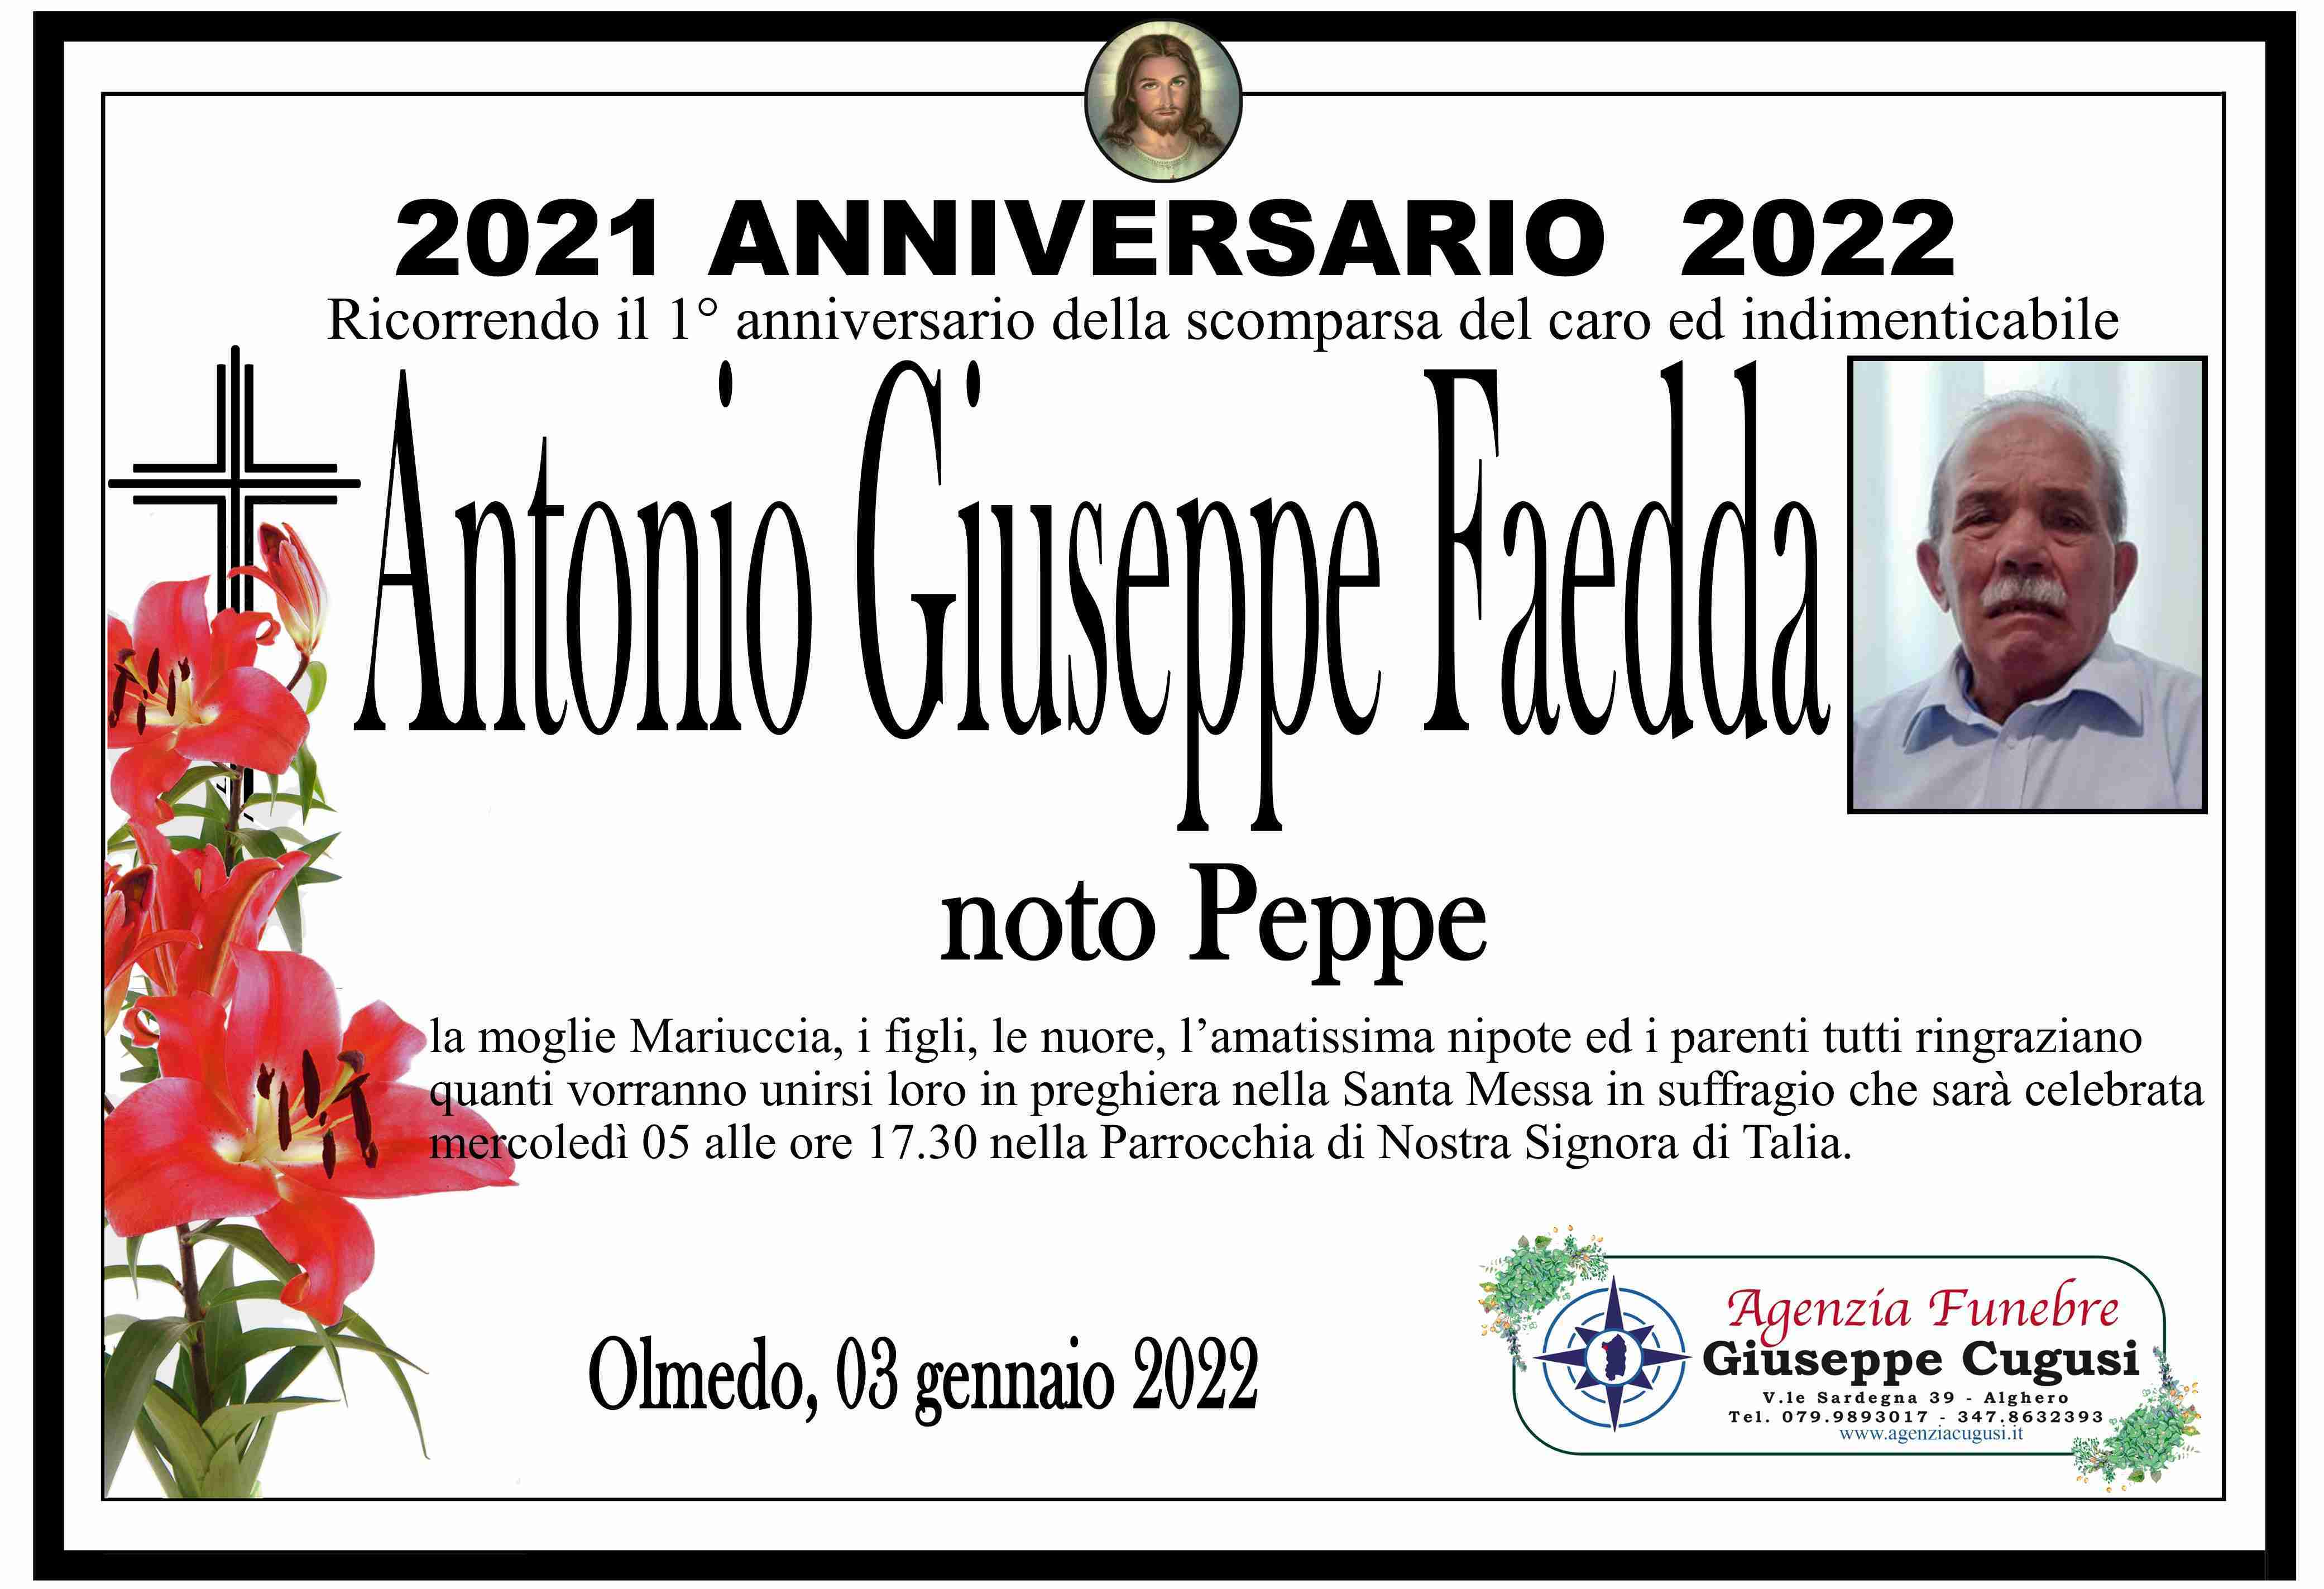 Antonio Giuseppe Faedda